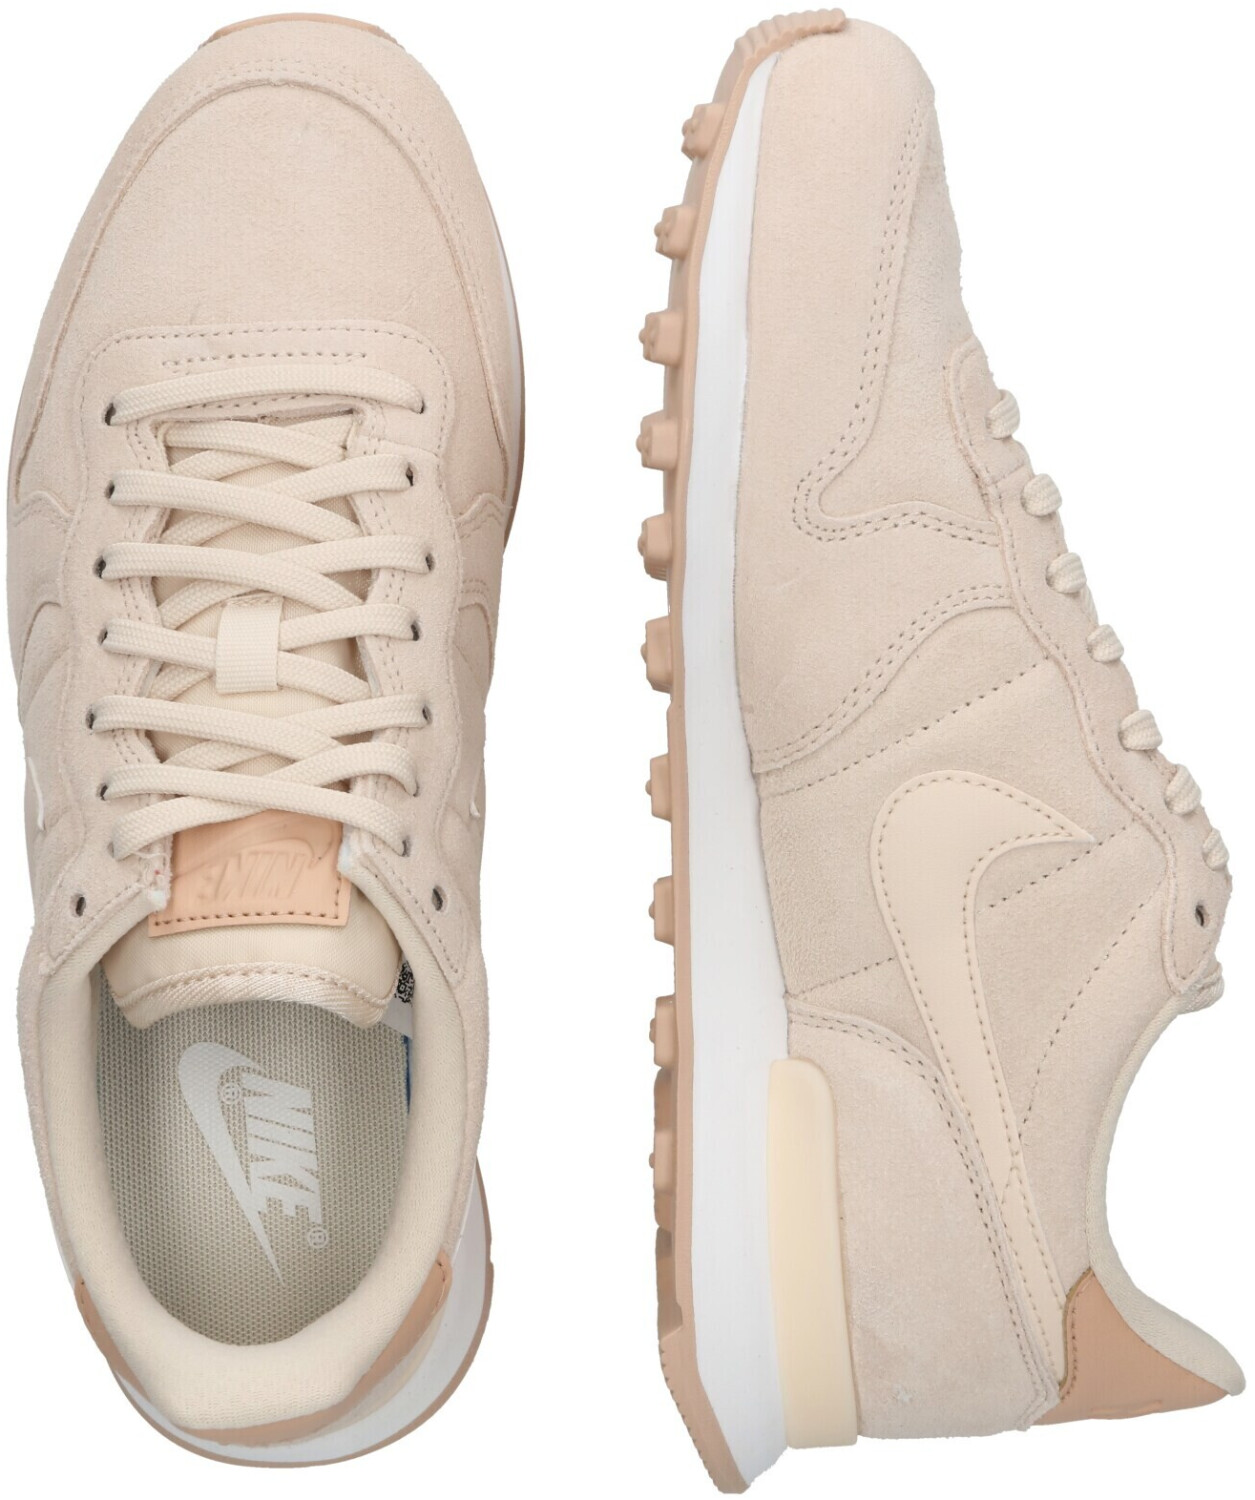 Rechtmatig hooi Schat Nike Internationalist Women pearl white/bio beige/summit white ab 72,20 €  (August 2023 Preise) | Preisvergleich bei idealo.de